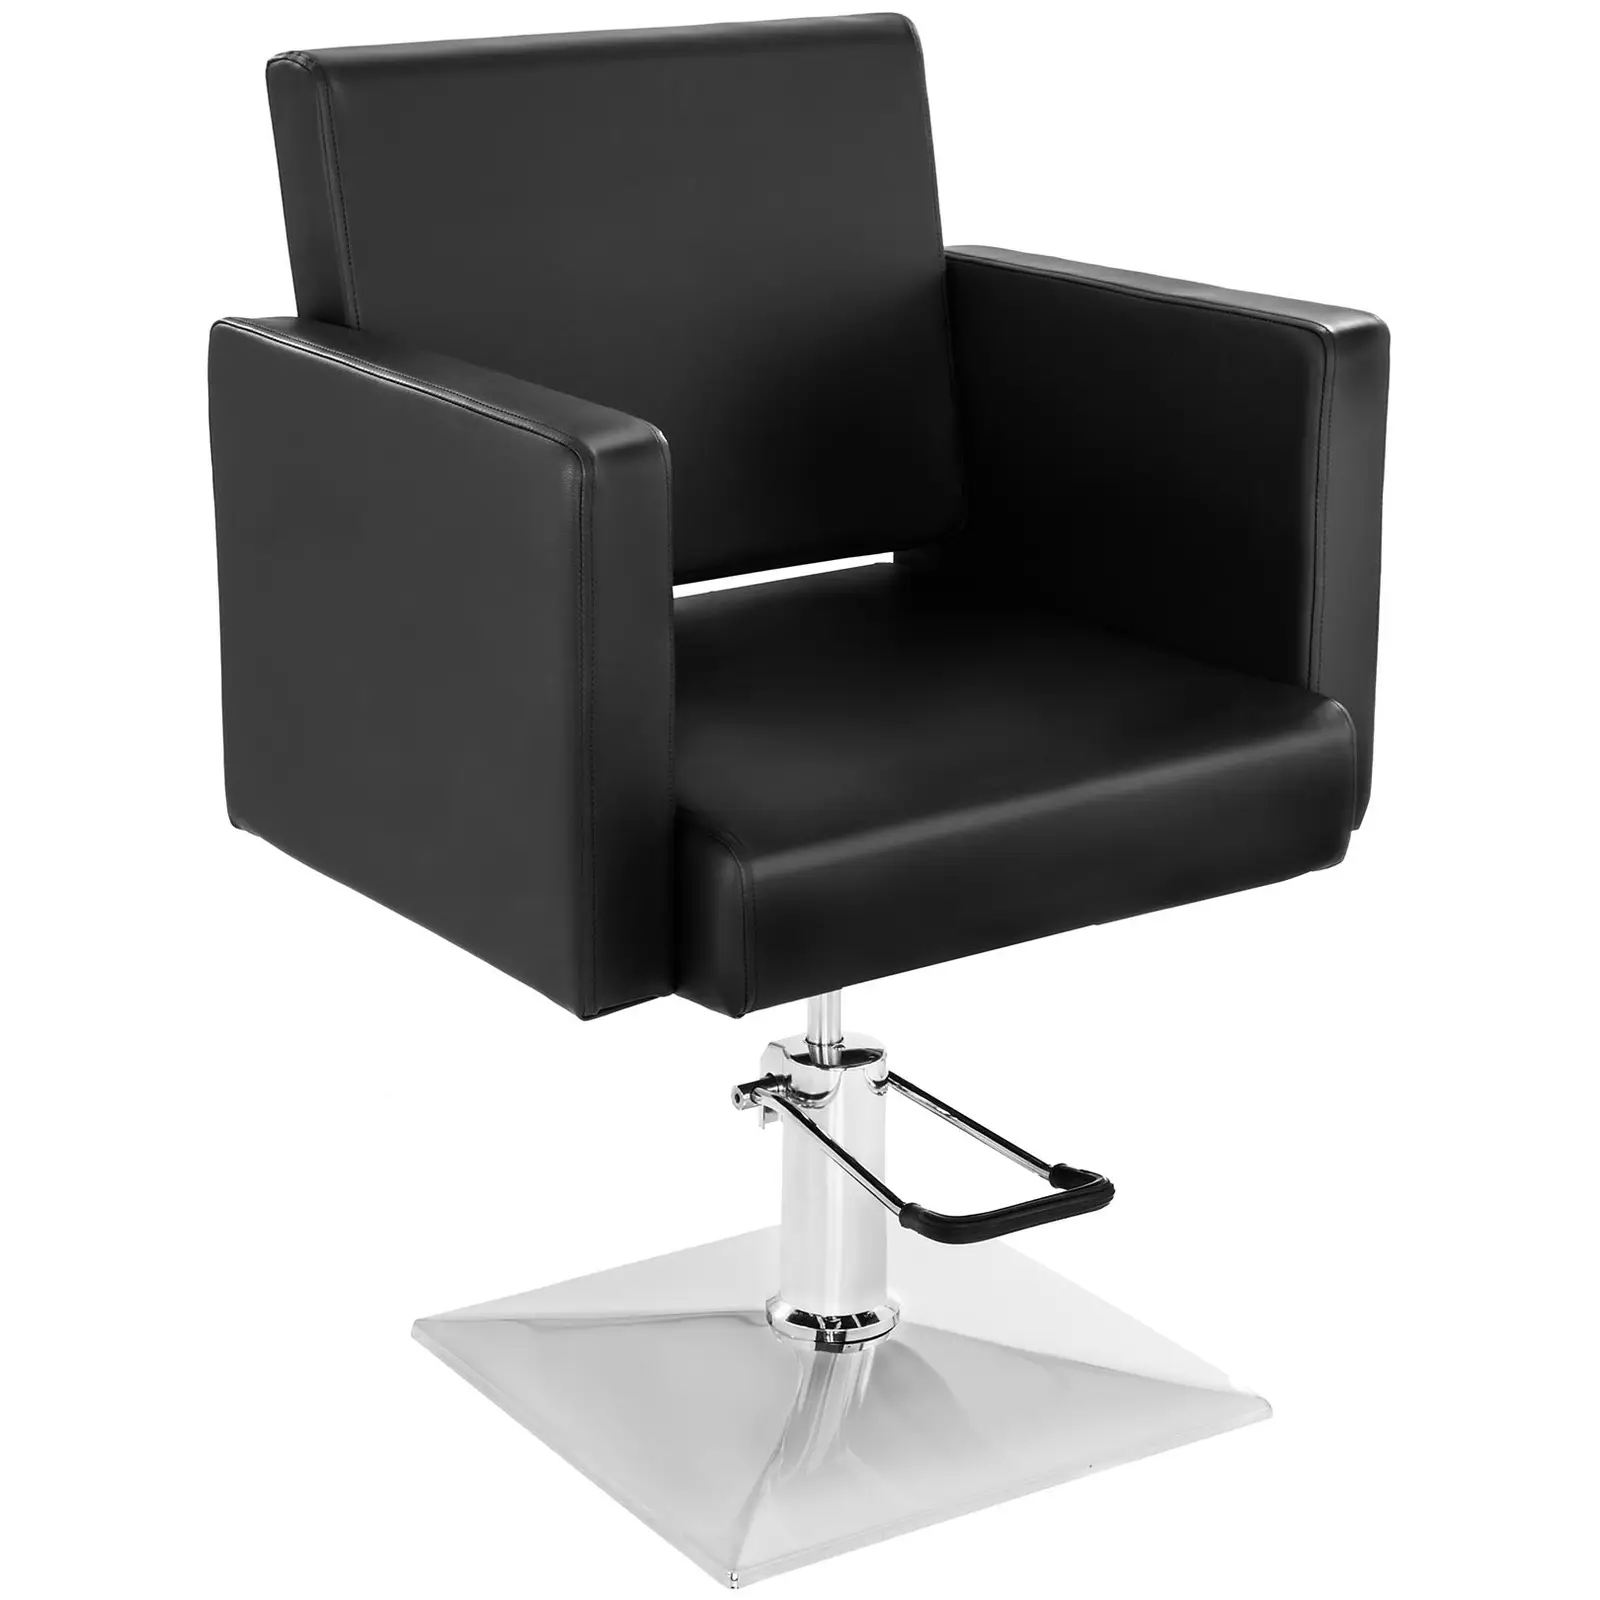 Fodrász szék - 200 kg - Black